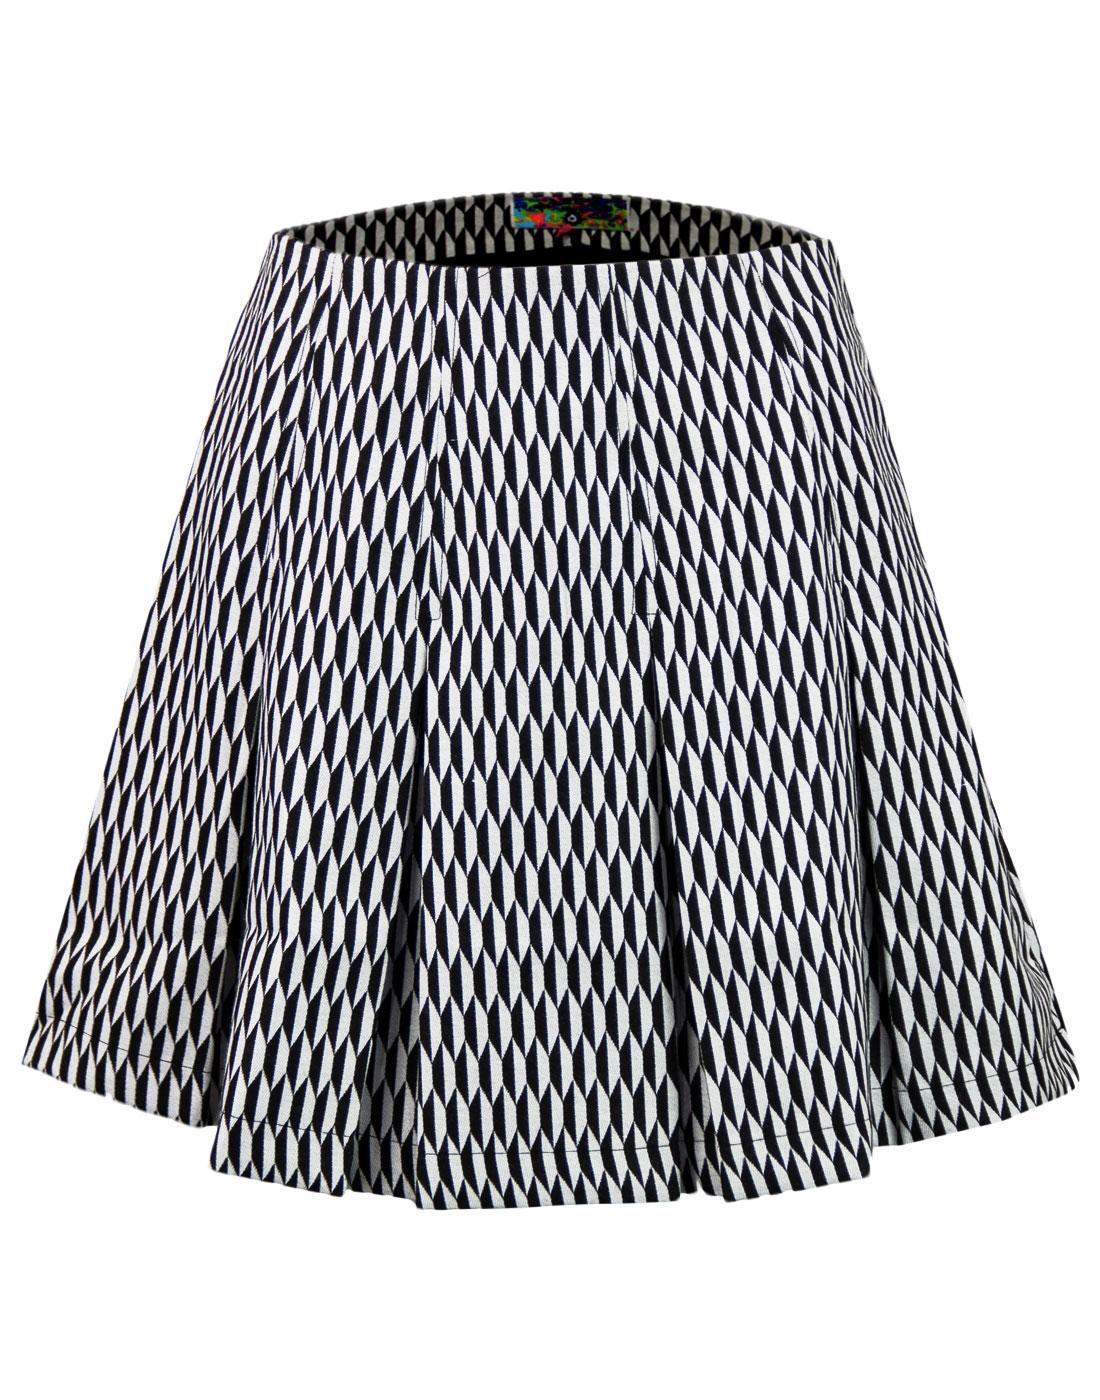 Ace MADCAP ENGLAND Mod Op Art Pleated Tennis Skirt